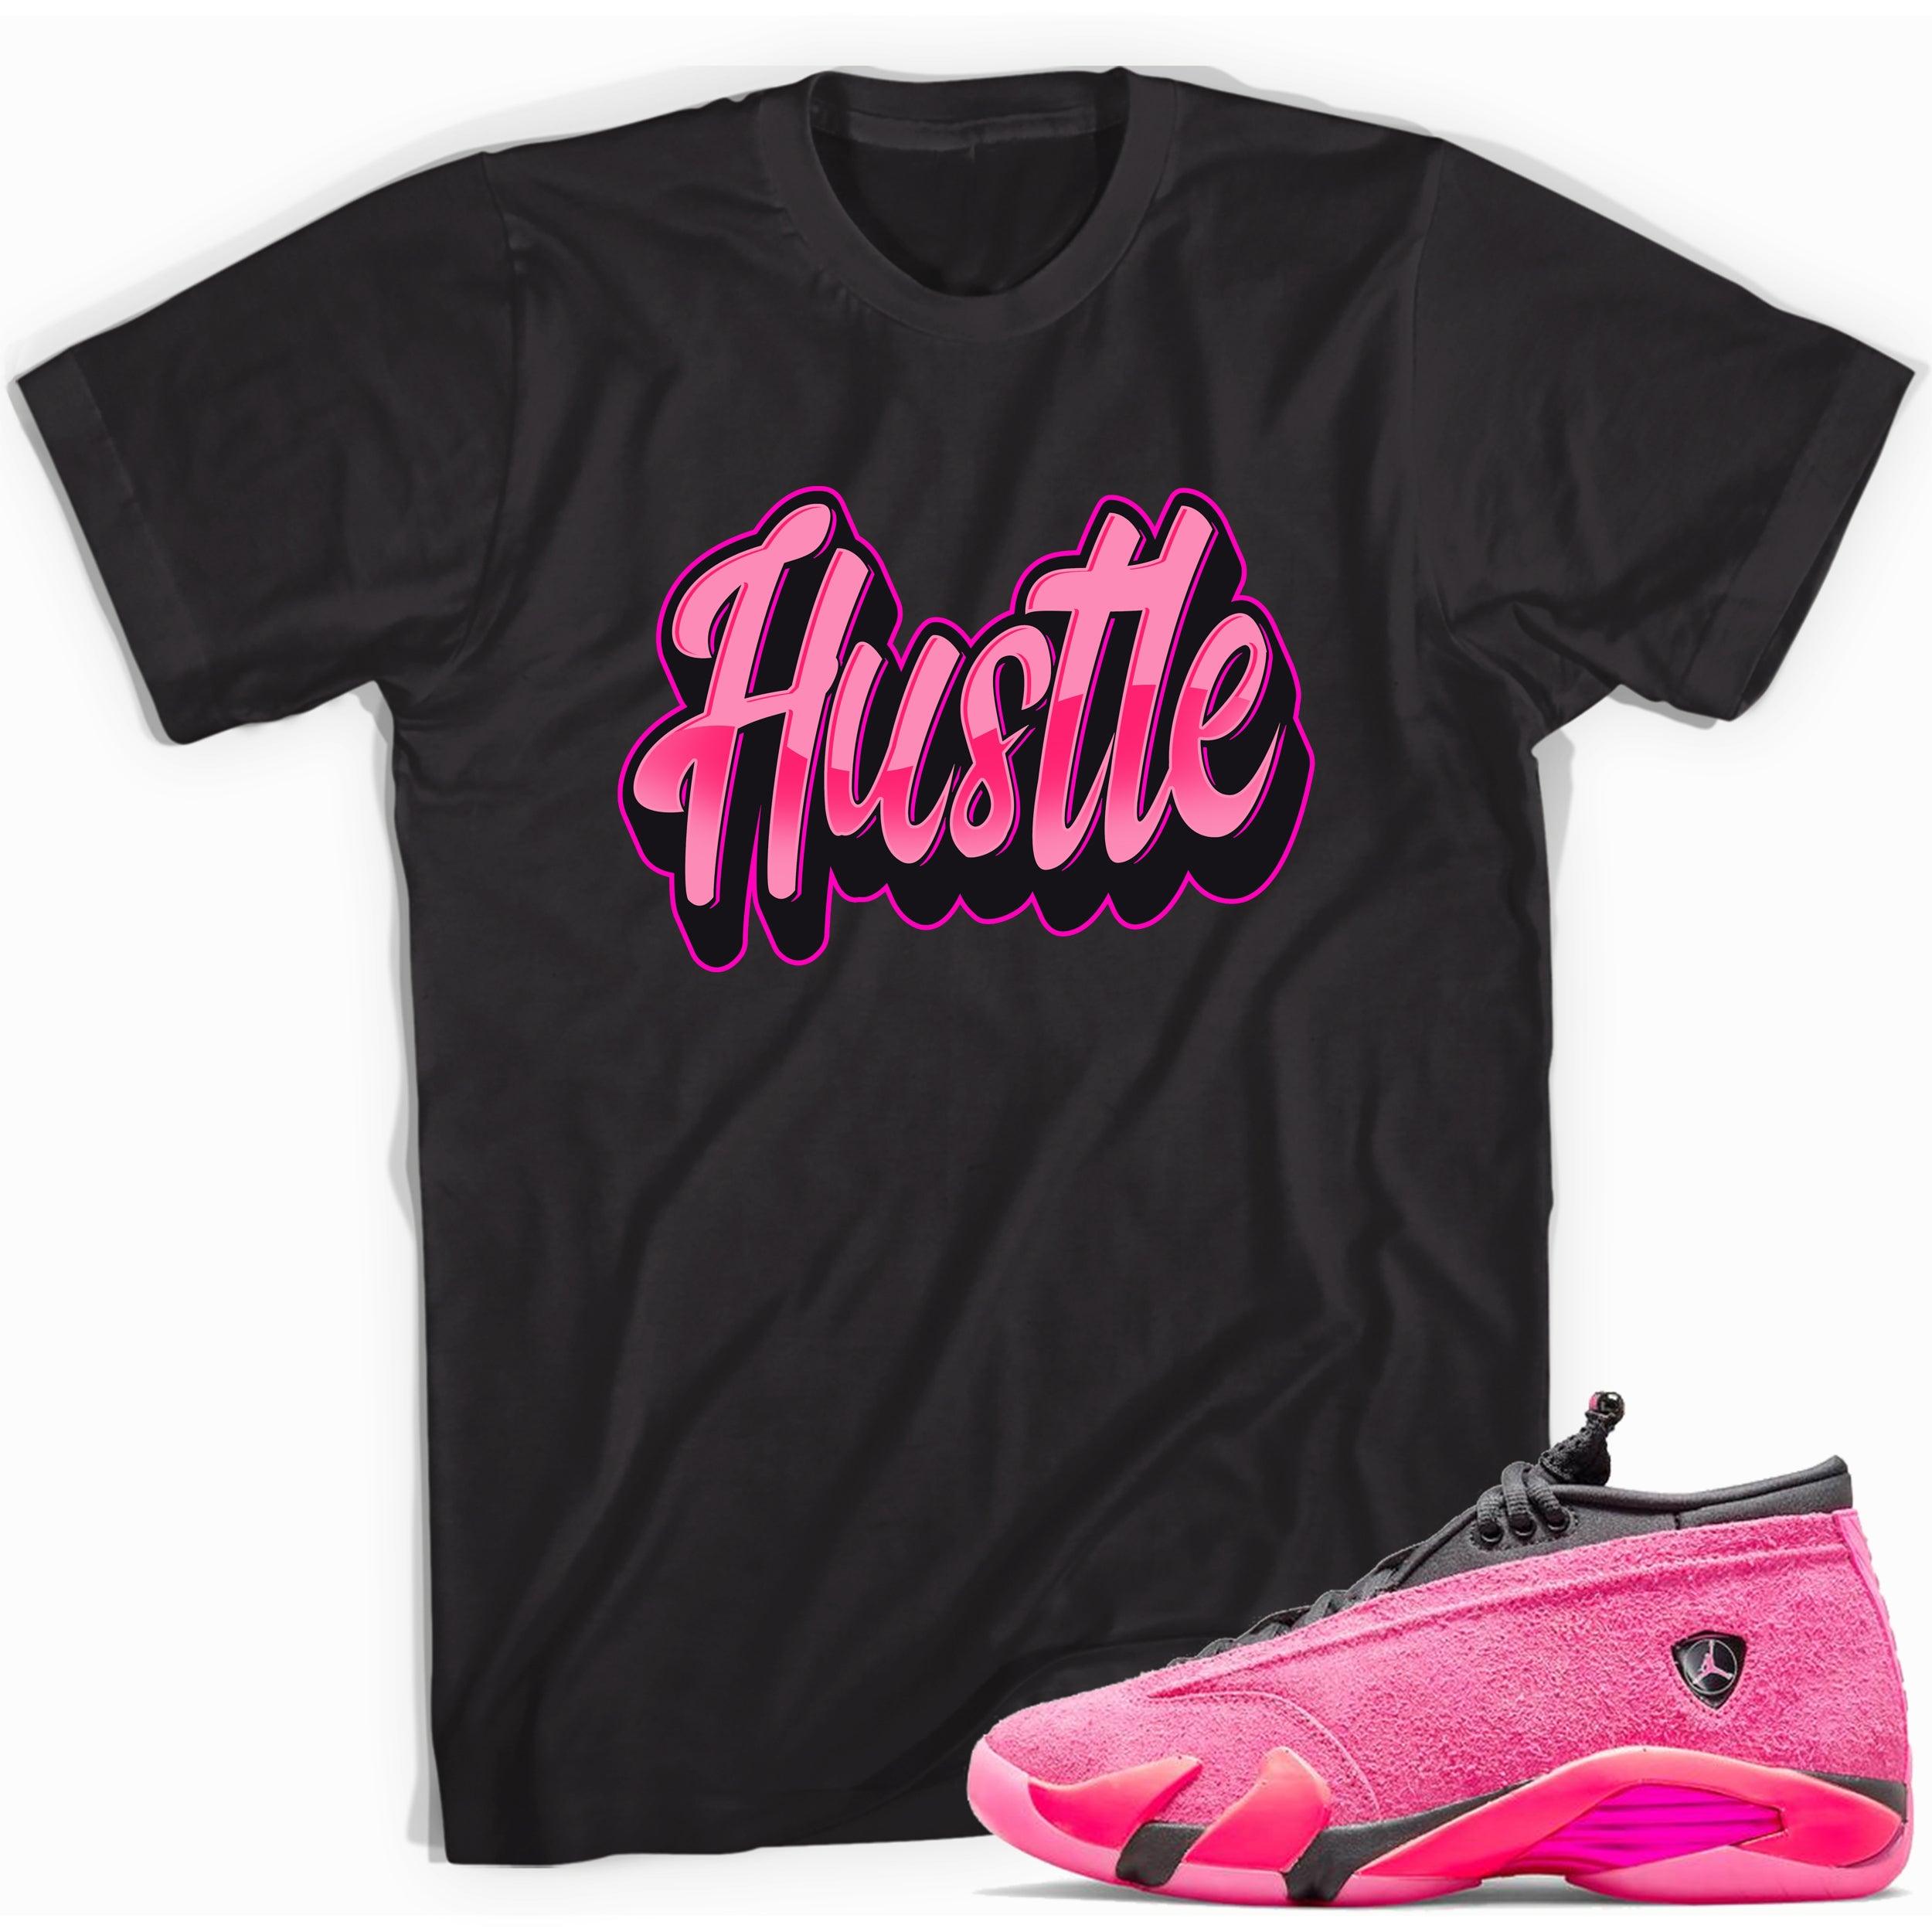 Black Hustle Shirt Jordan 14s Low Shocking Pink photo